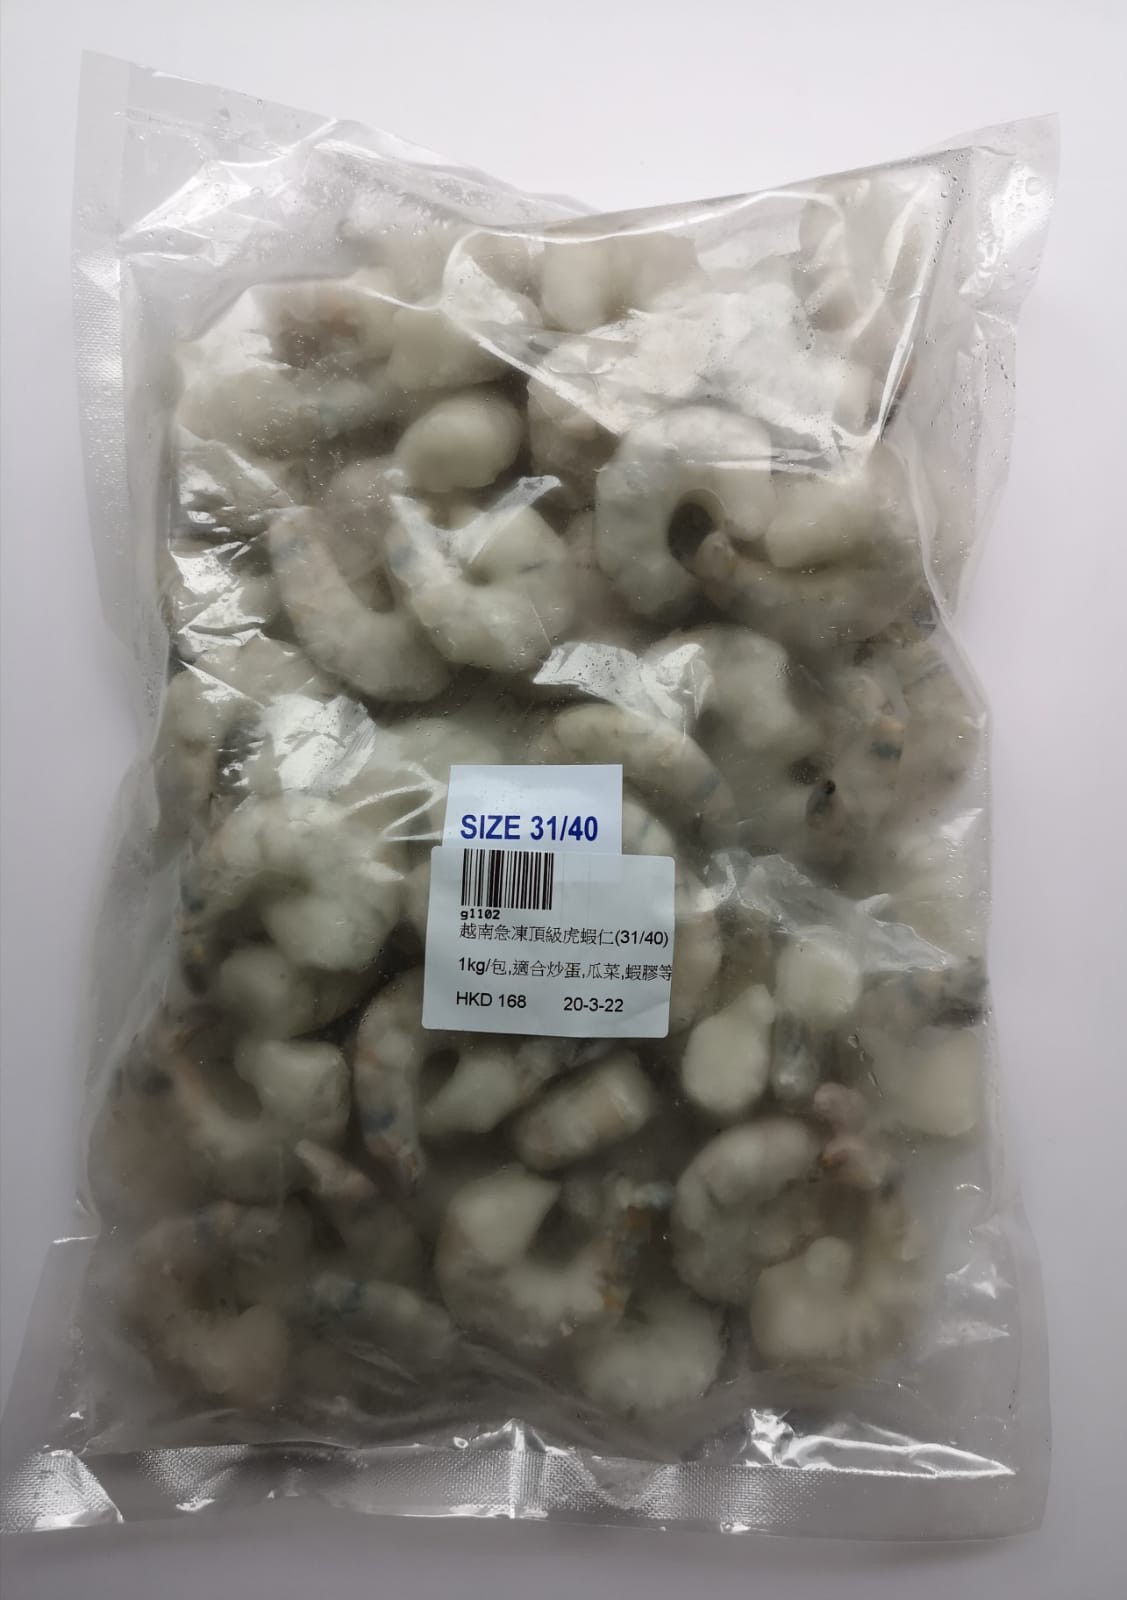 越南急凍頂級虎蝦仁(21-25號)1kg/包 適合炒蛋,瓜菜,蝦膠等